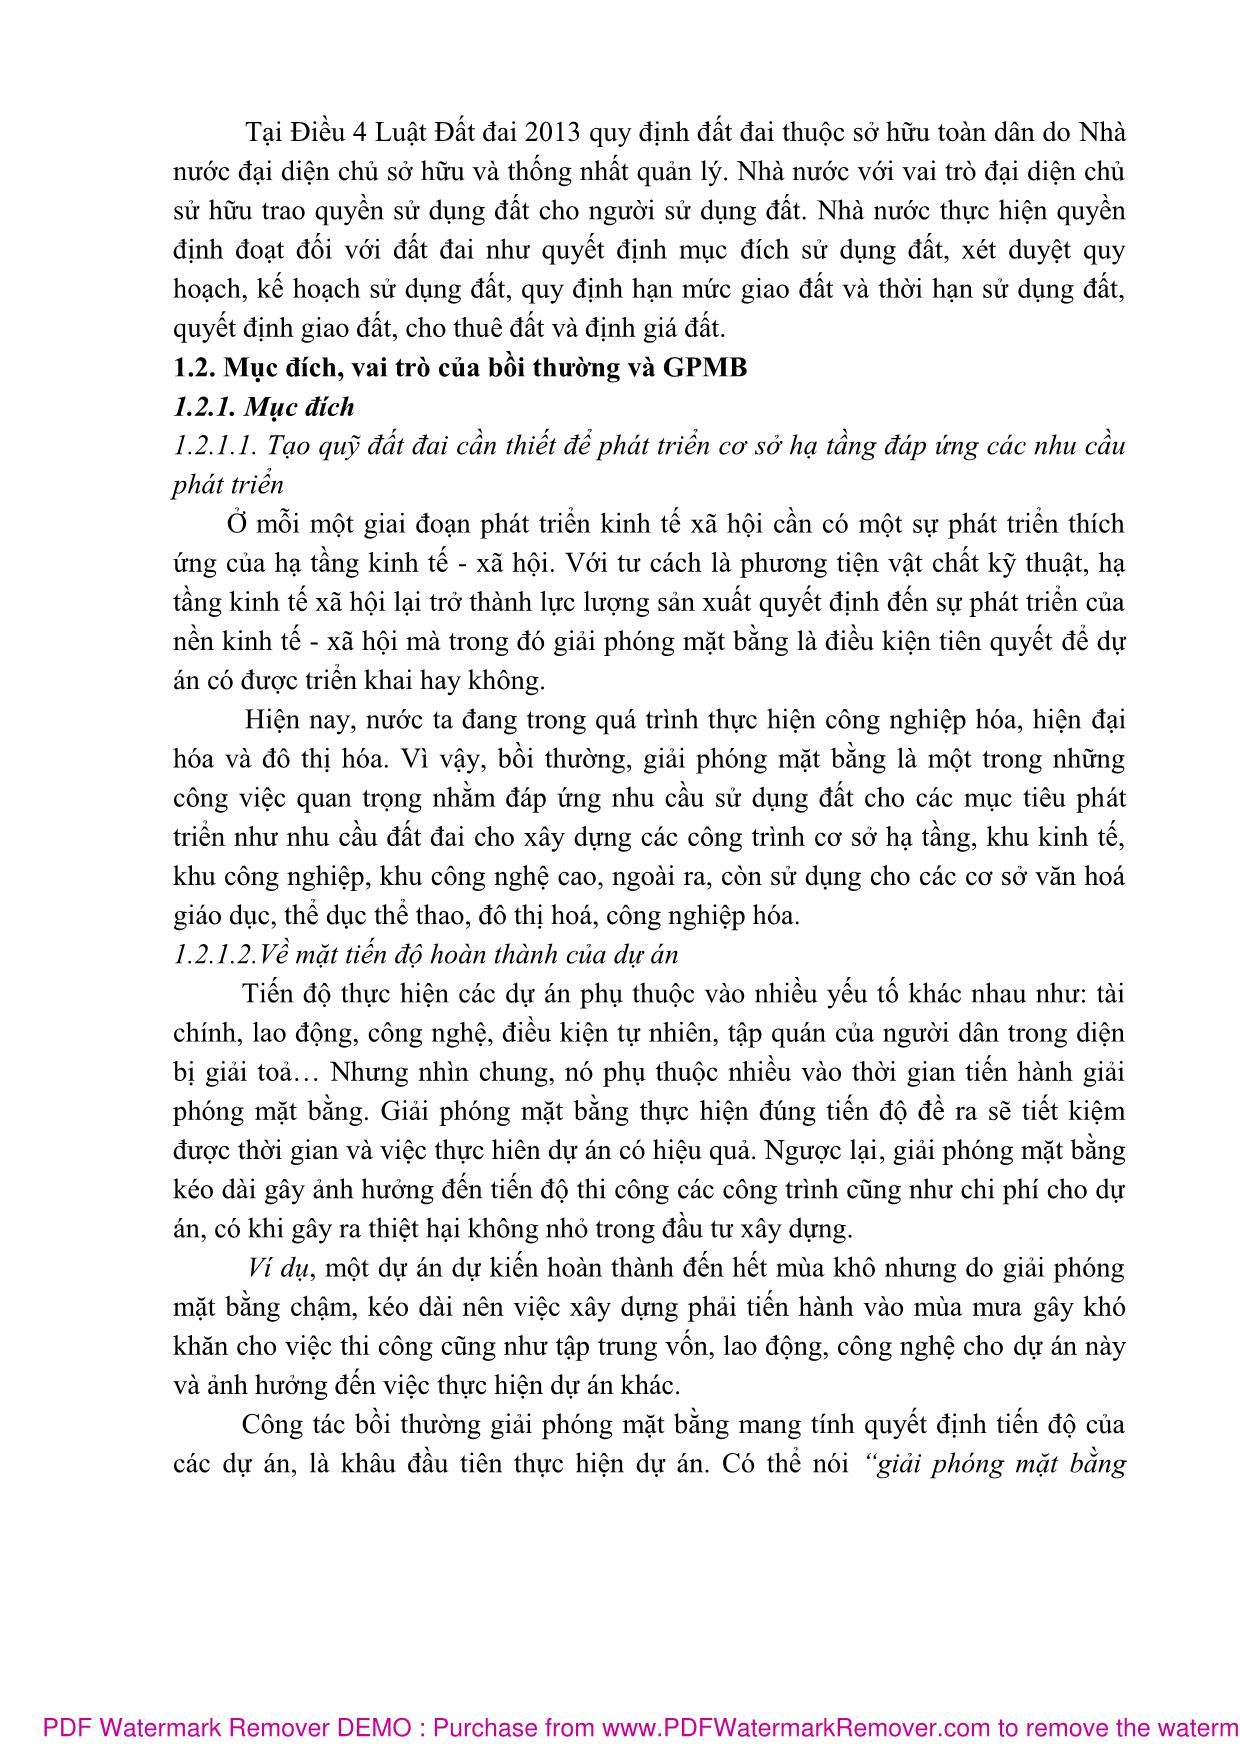 Bài giảng Bồi thường giải phóng mặt bằng (Phần 1) - Nguyễn Thị Nhật Linh trang 7